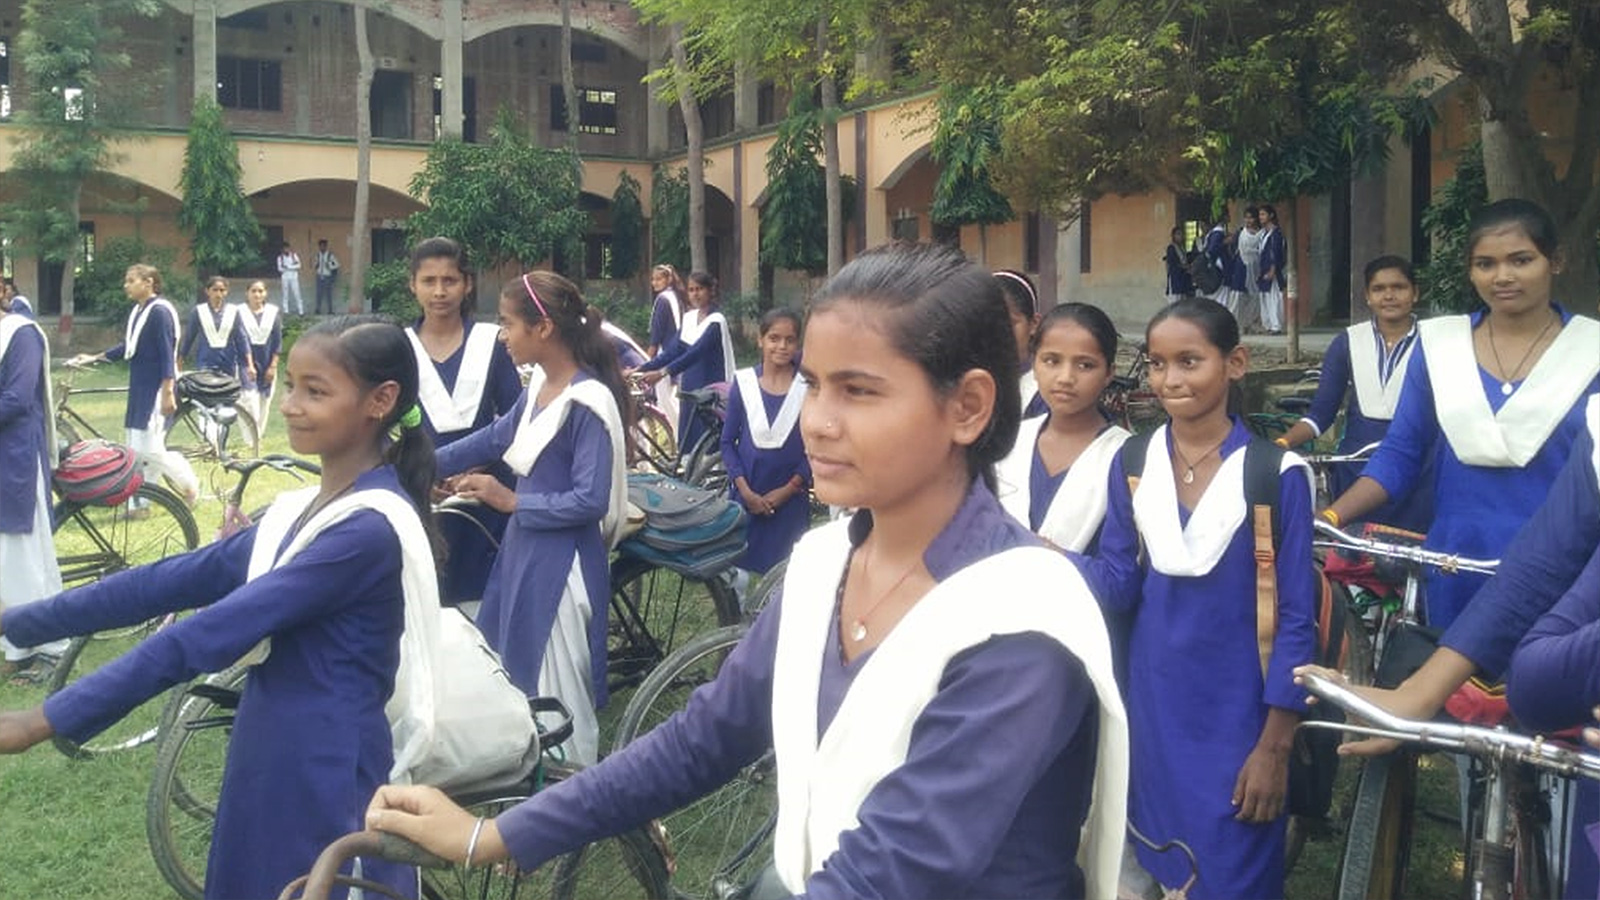 الإحصائيات تشير لارتفاع نسبة تعليم الفتيات في المجتمع الهندي (الجزيرة)